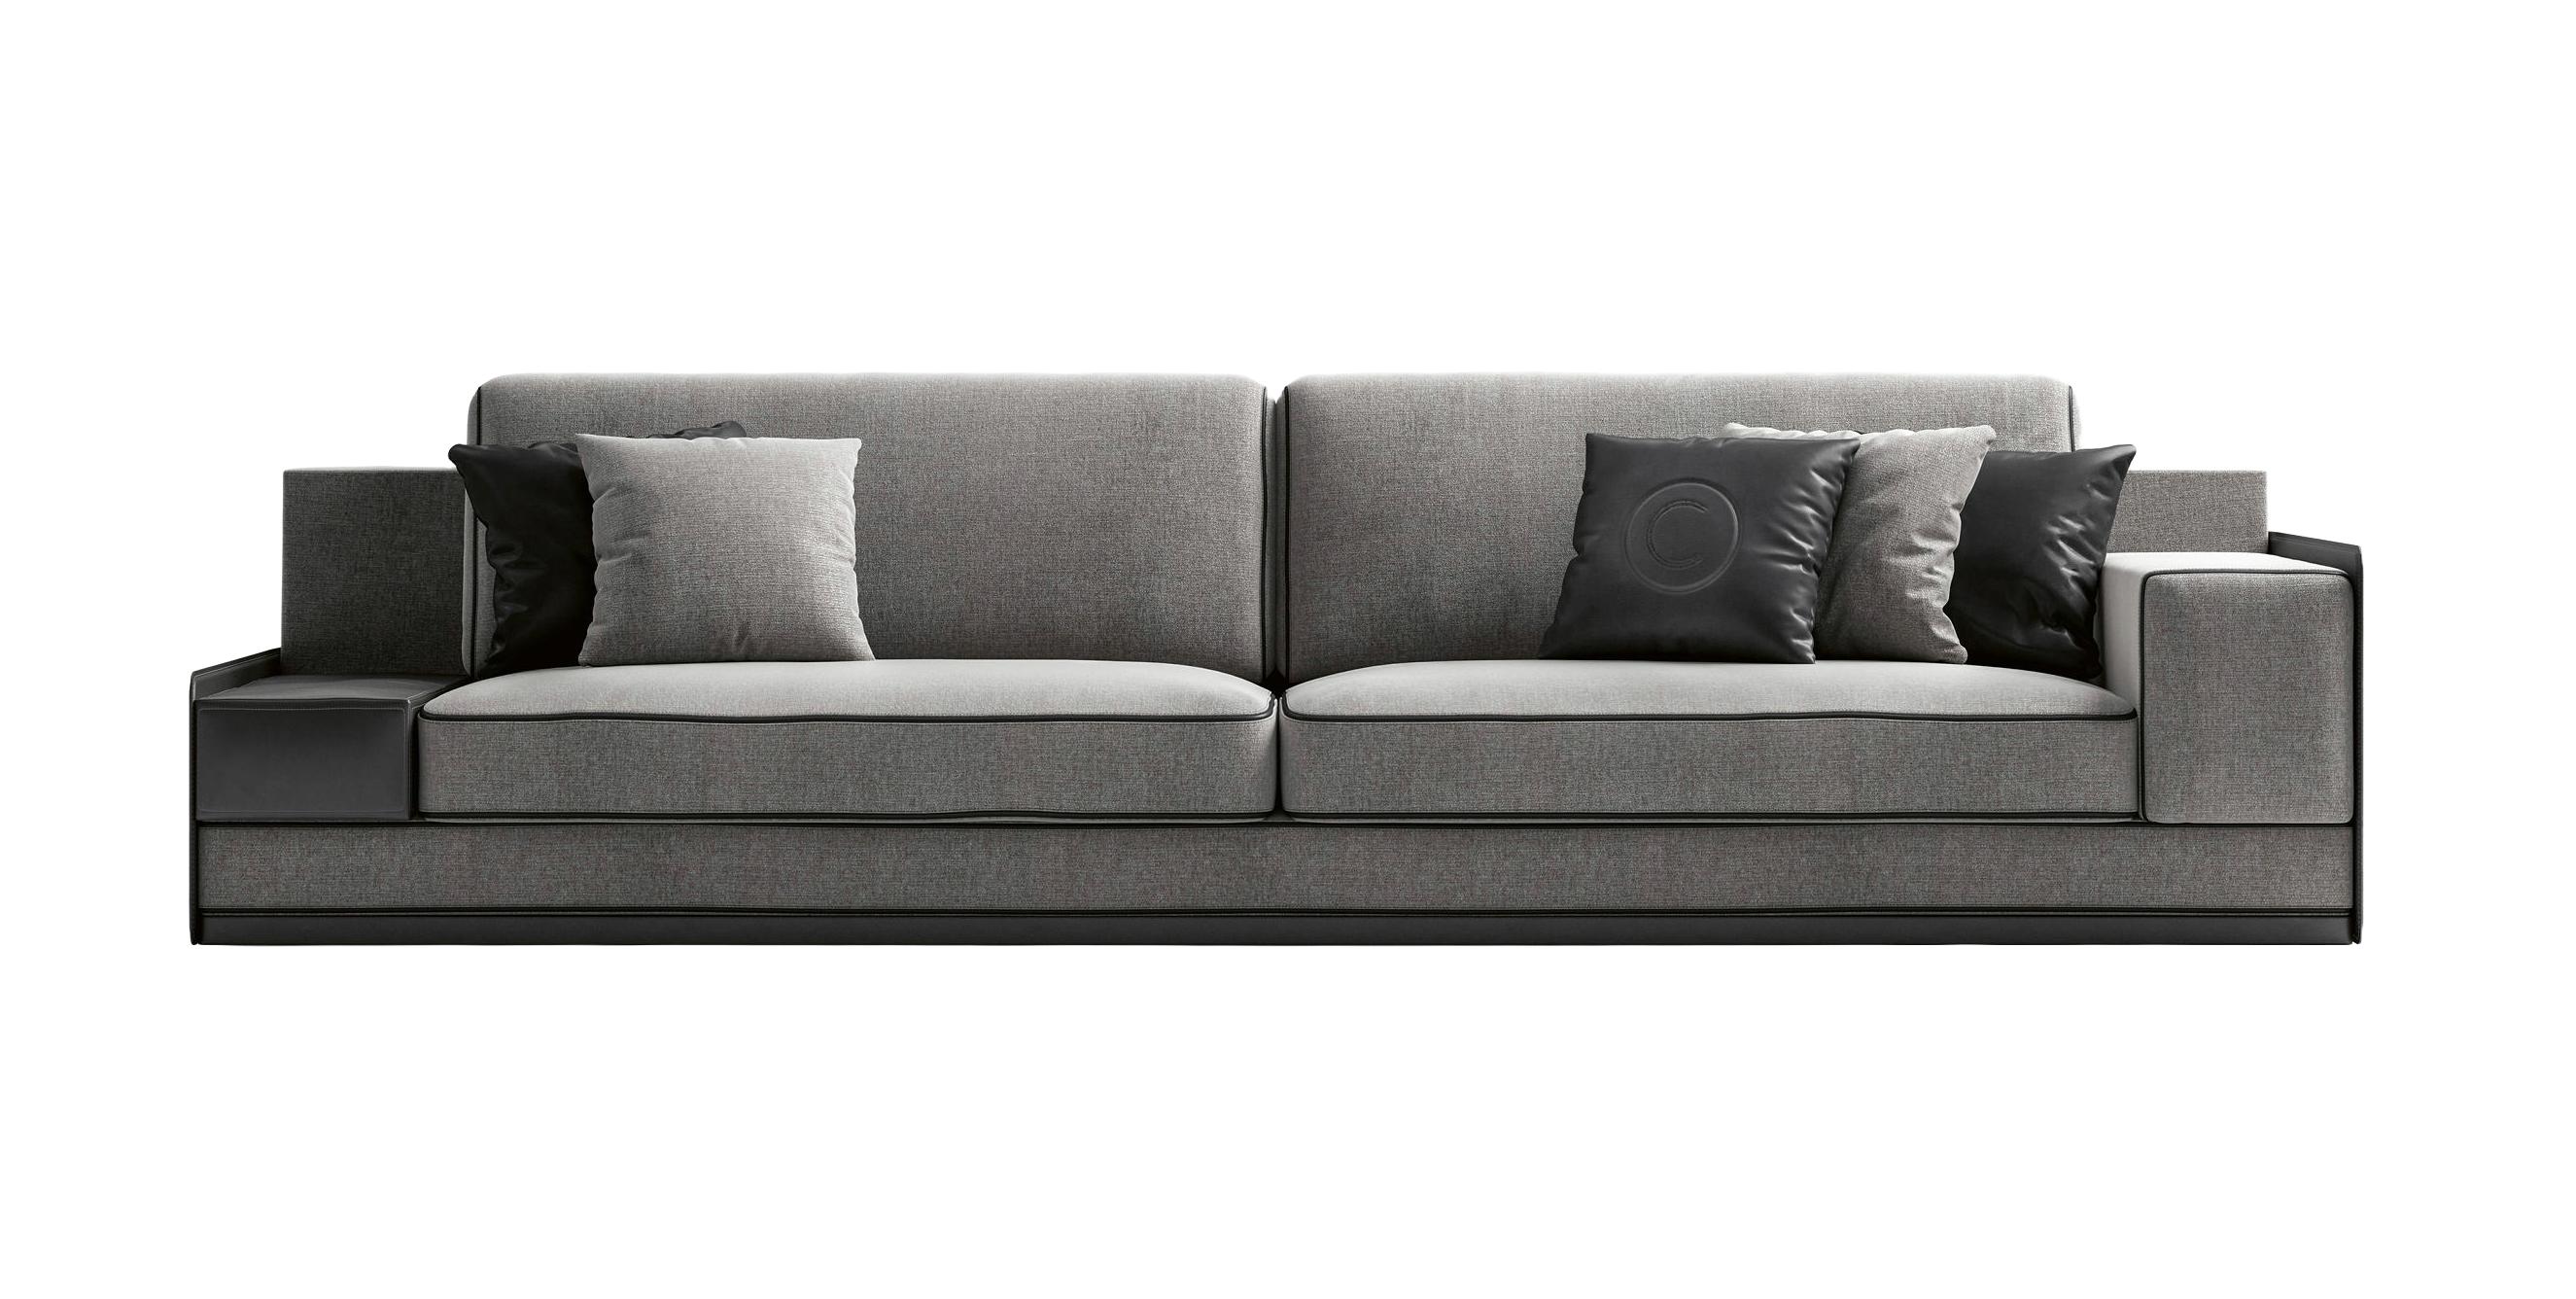 Comfortable Modern Sofa